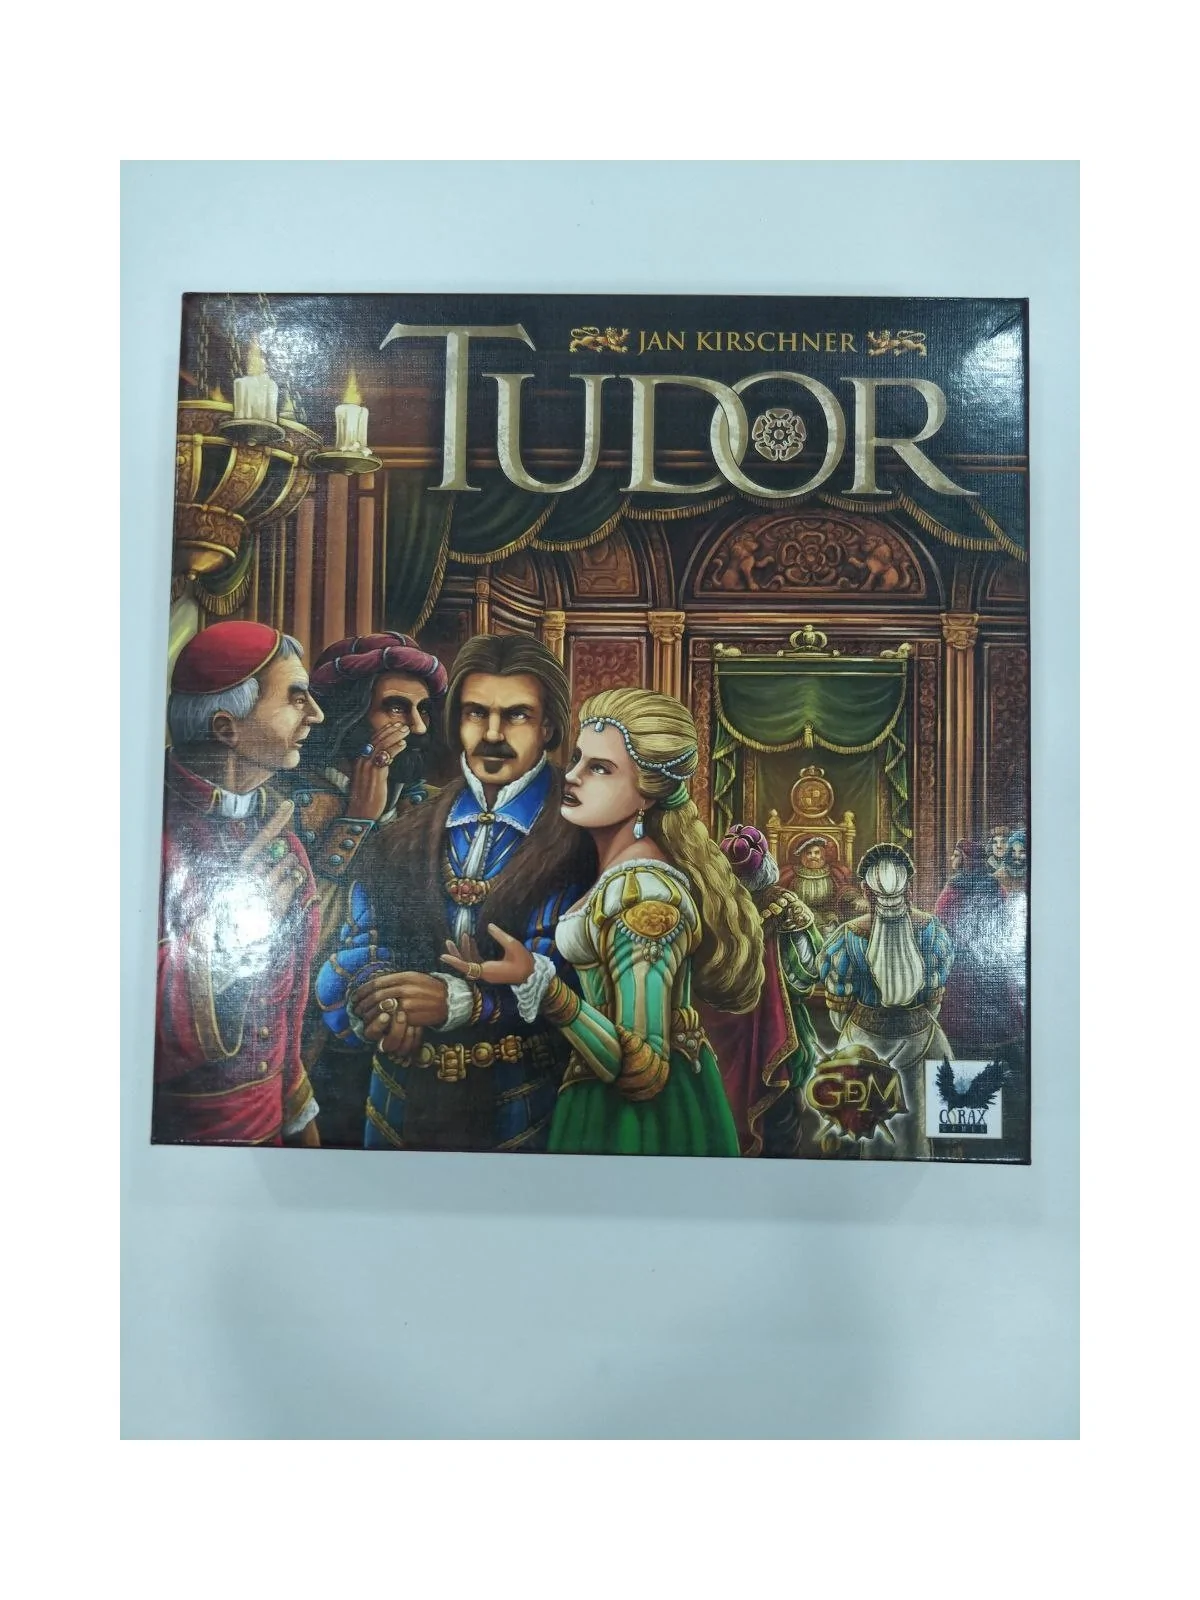 Comprar Tudor [SEGUNDA MANO] barato al mejor precio 15,00 € de GDM Gam